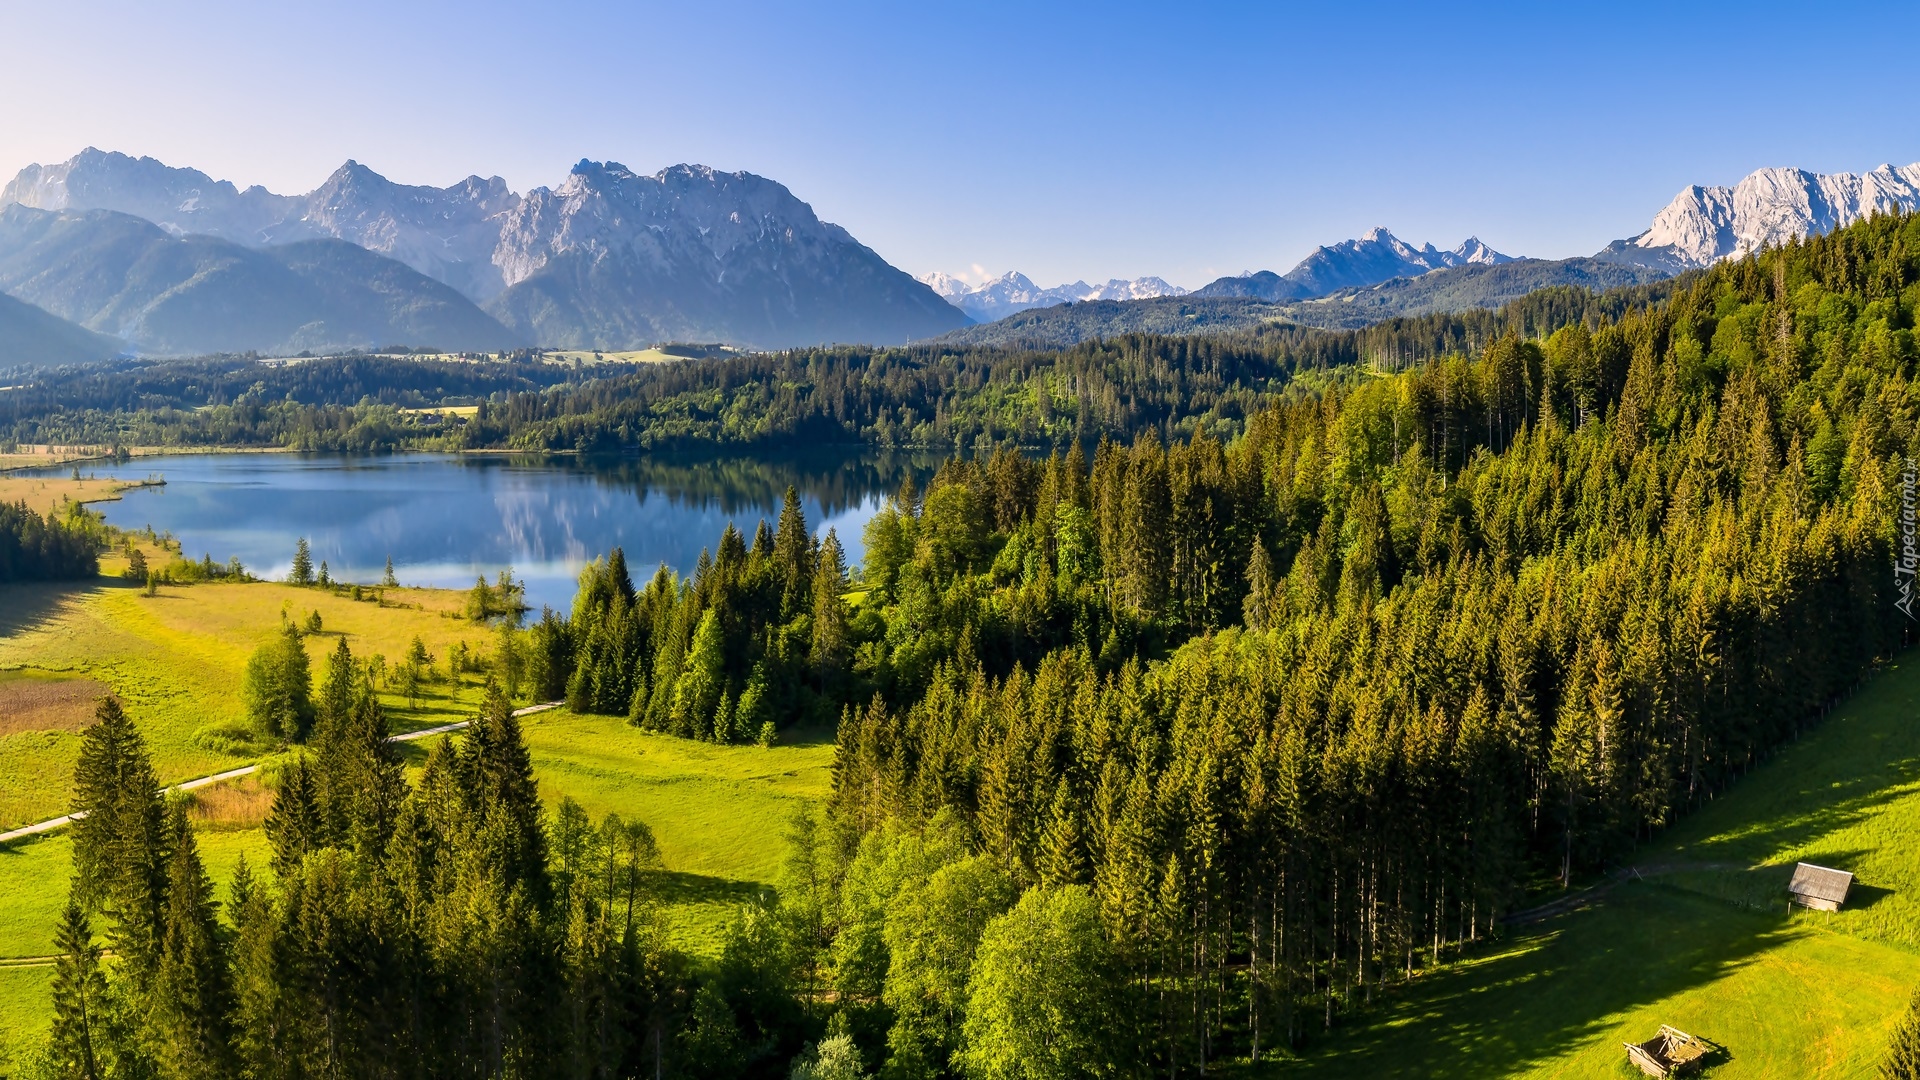 Jezioro Eibsee, Góry, Karwendel, Drzewa, Zielone, Lasy, Bawaria, Niemcy